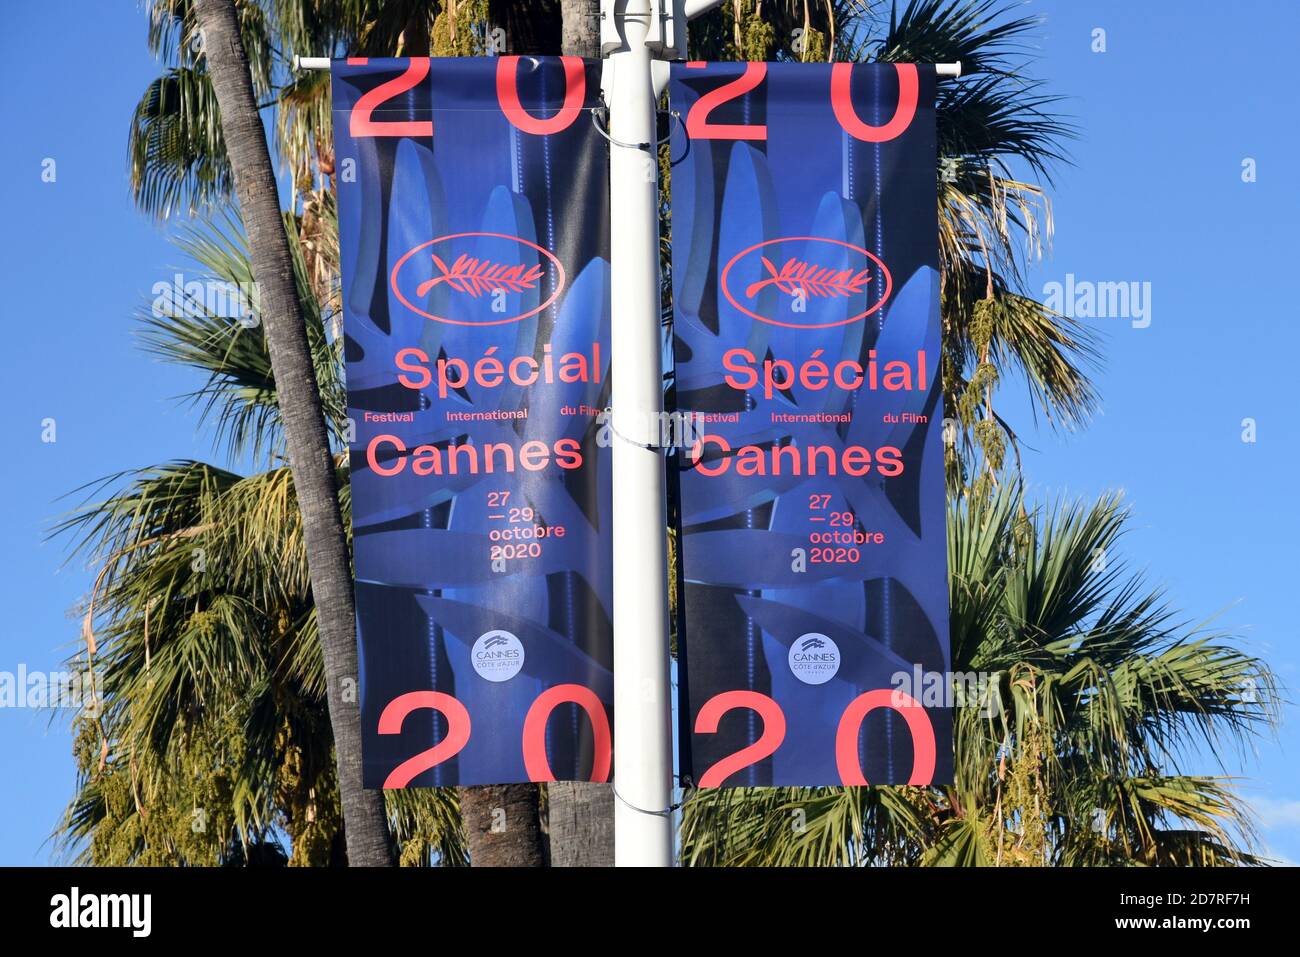 Frankreich, französische riviera, Cannes, die Werbung für das Internationale Filmfestival Special, das Festival 2020 wurde aufgrund der gesundheitlichen Krise geändert. Stockfoto